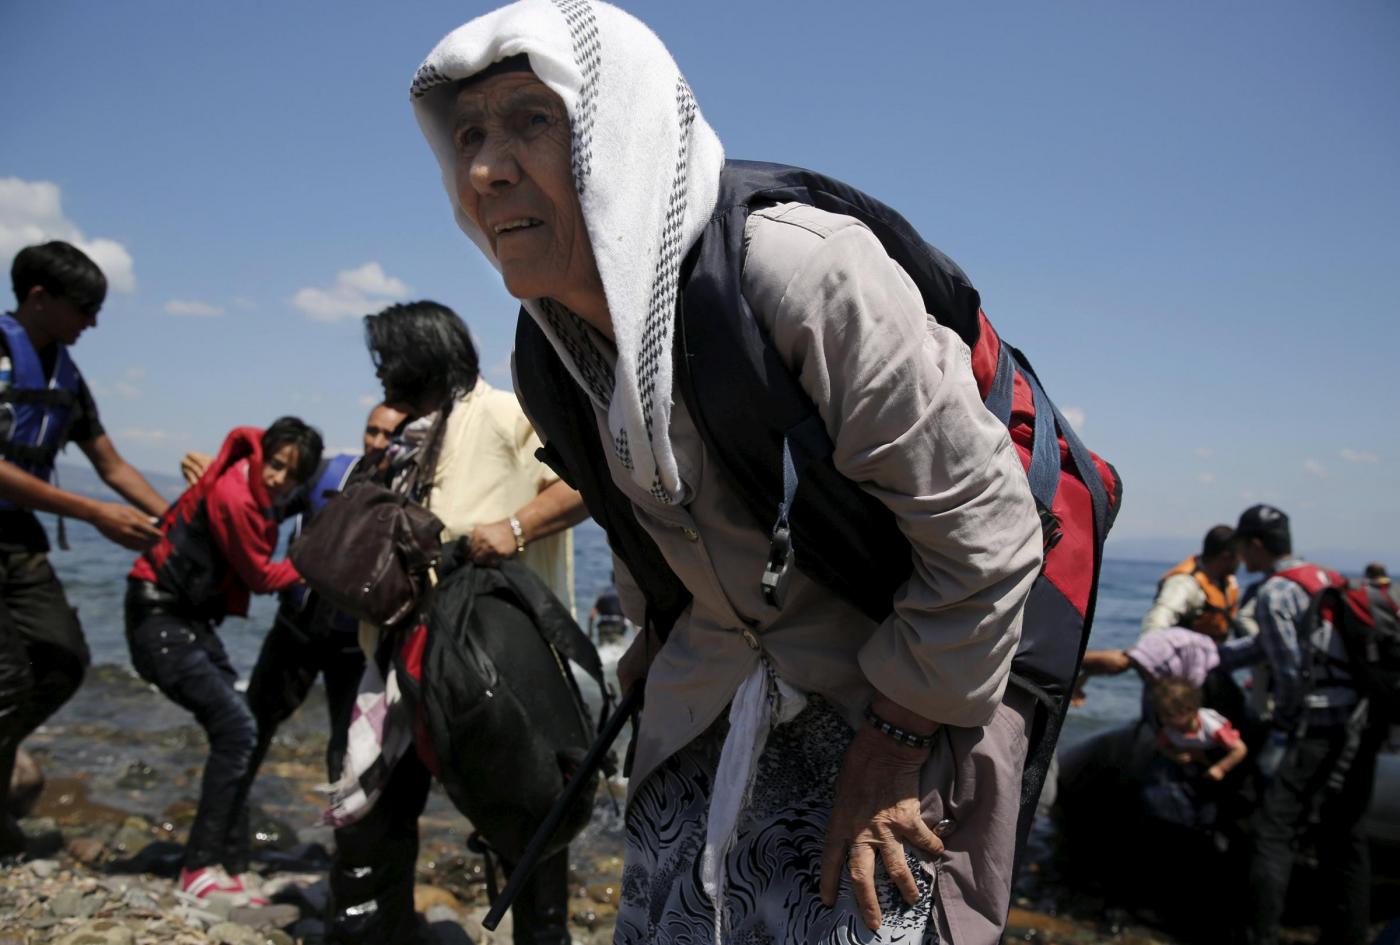 In fuga dalla guerra: giovane spinge la nonna in carrozzina dall’Afghanistan